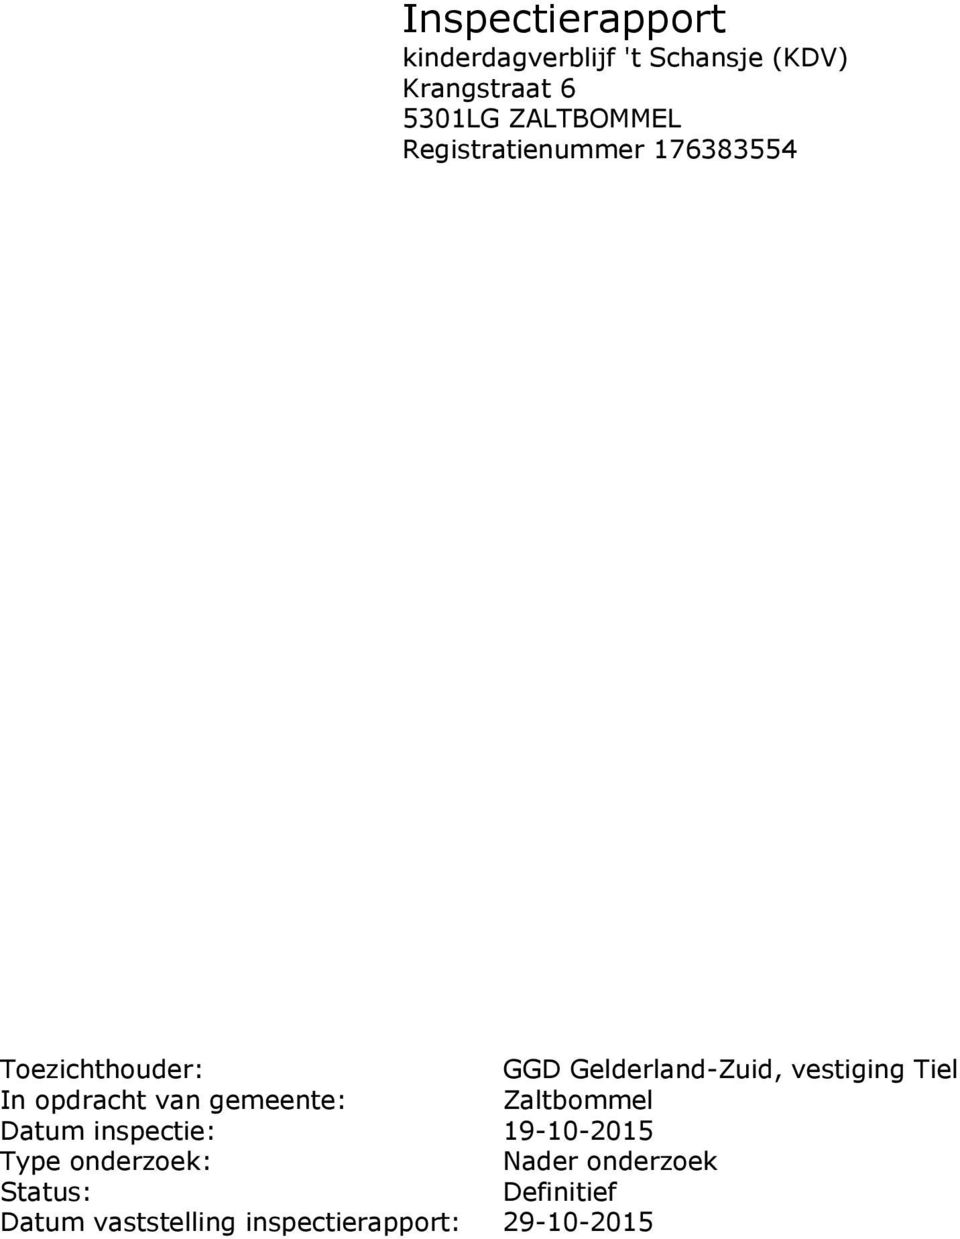 vestiging Tiel In opdracht van gemeente: Zaltbommel Datum inspectie: 19-10-2015